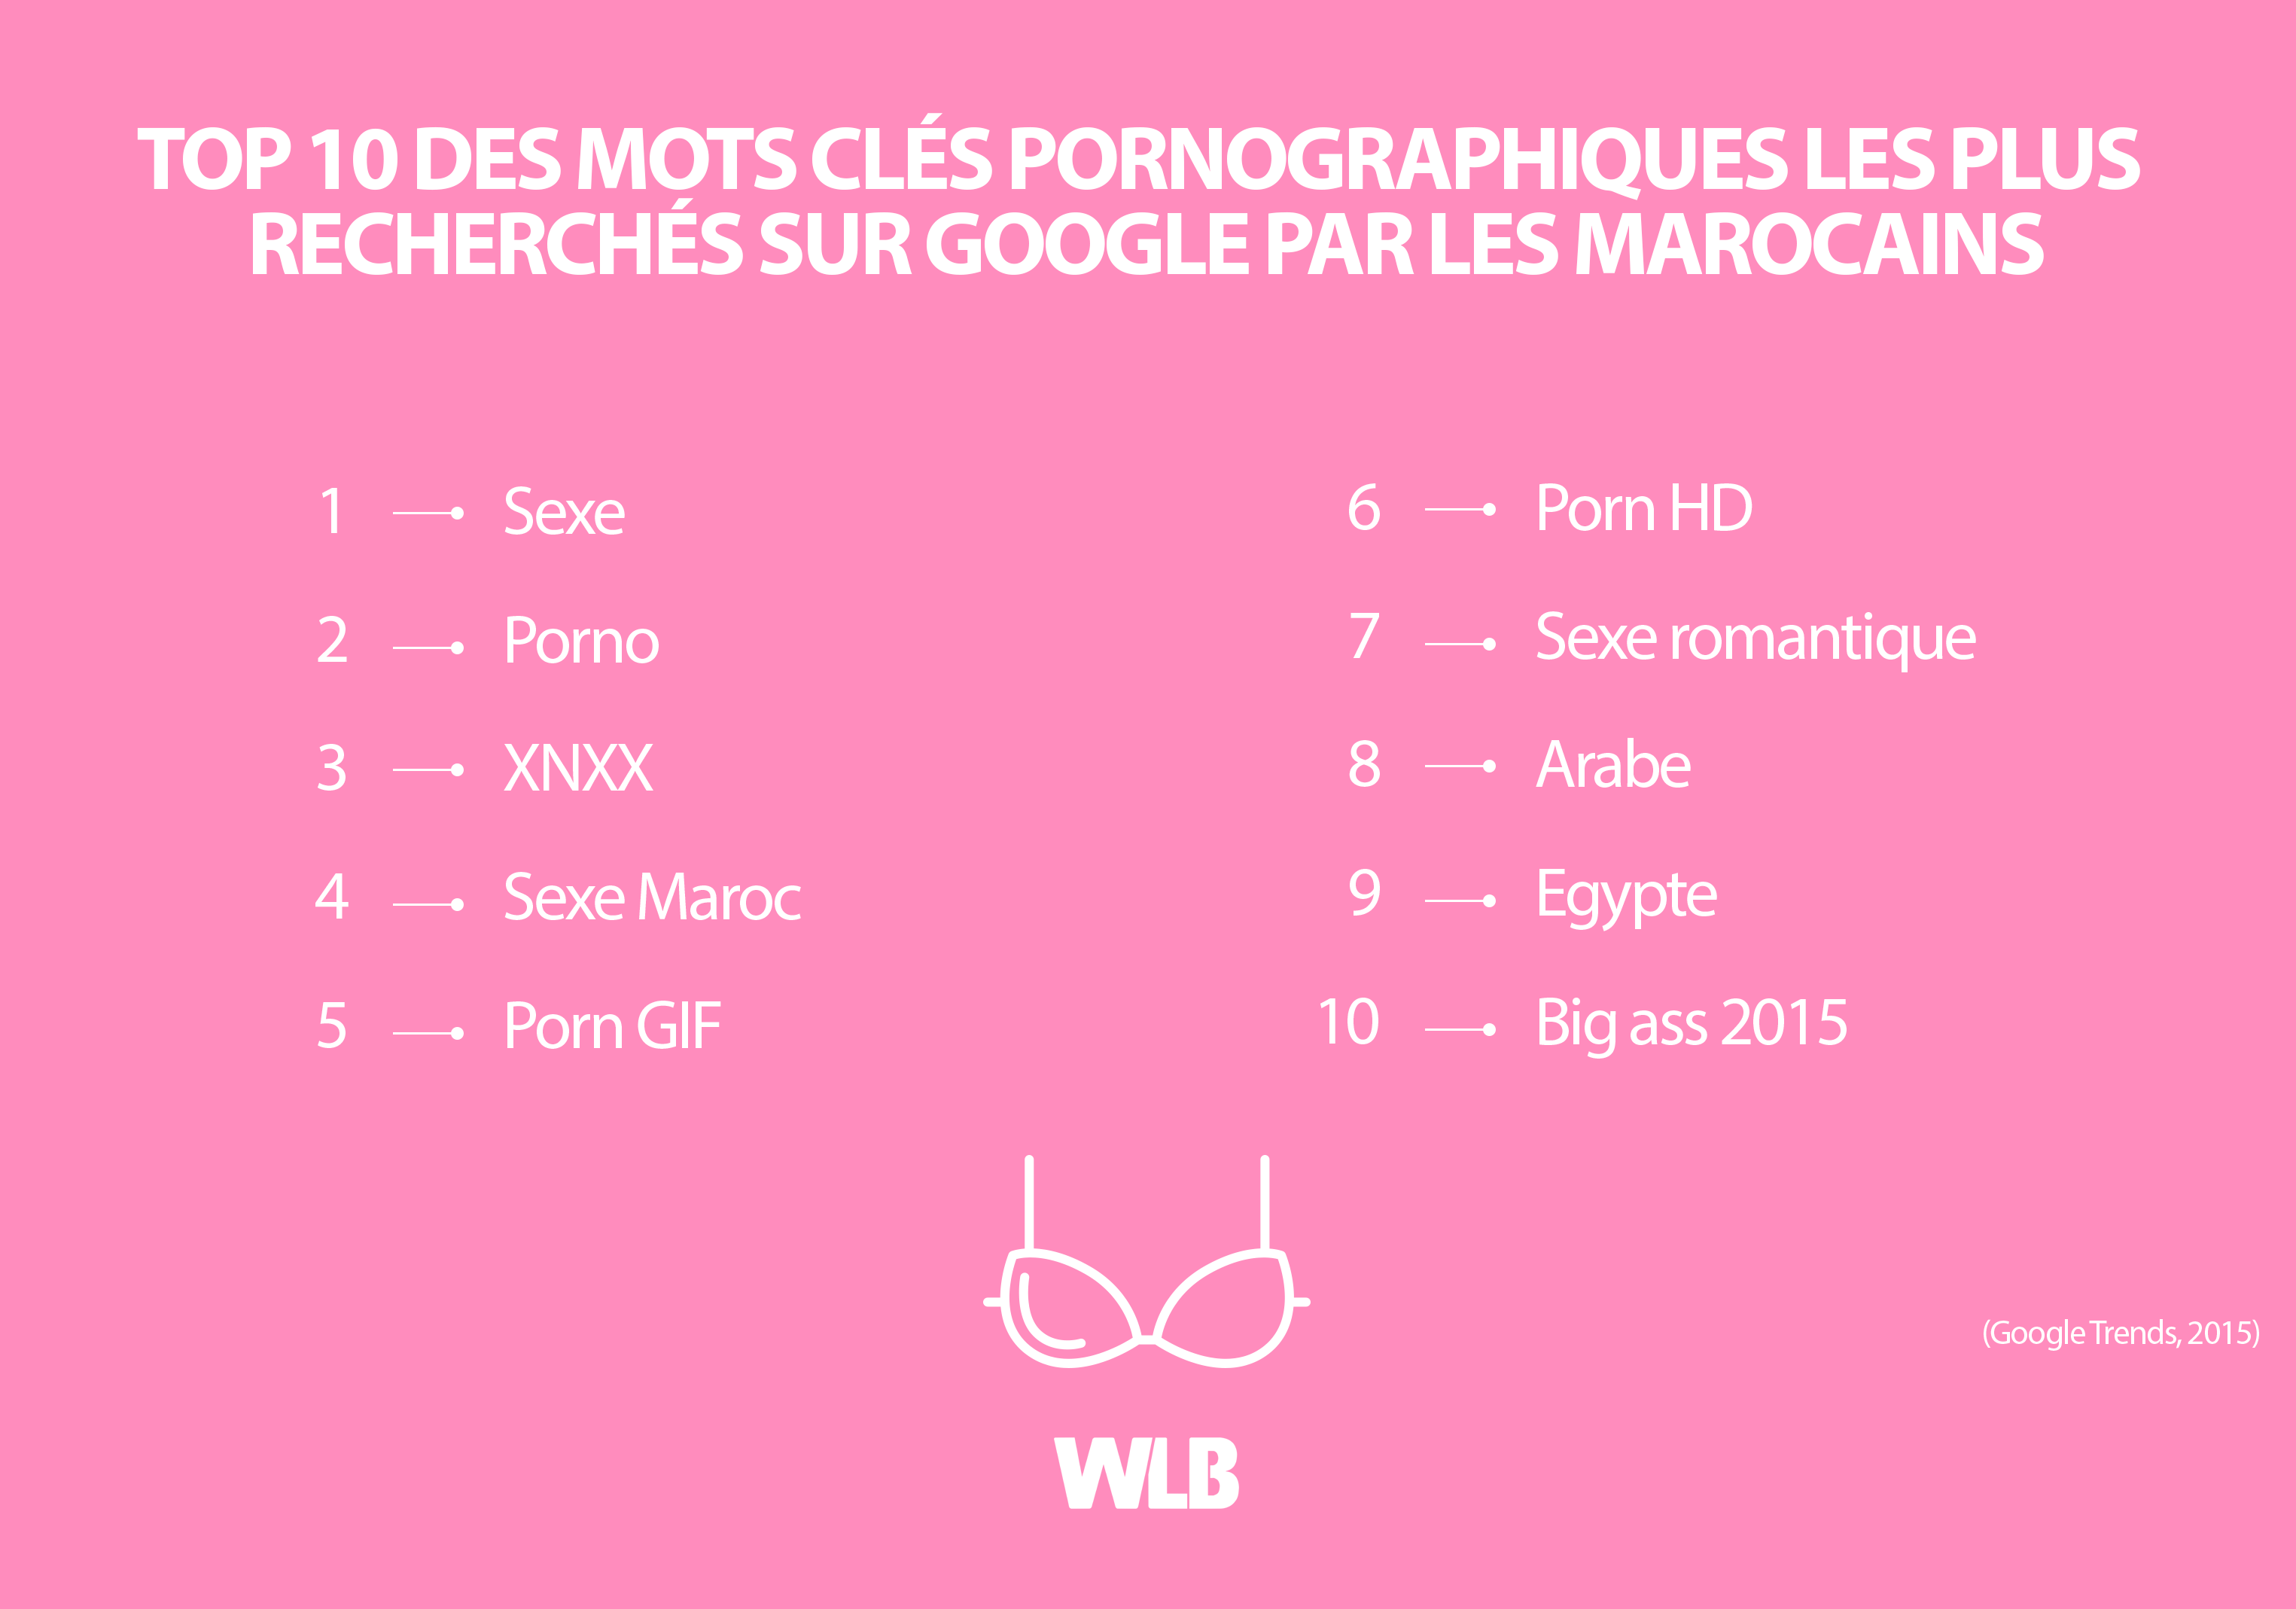 Top 10 des mots clés pornographiques les plus recherchés sur Google par les Marocains